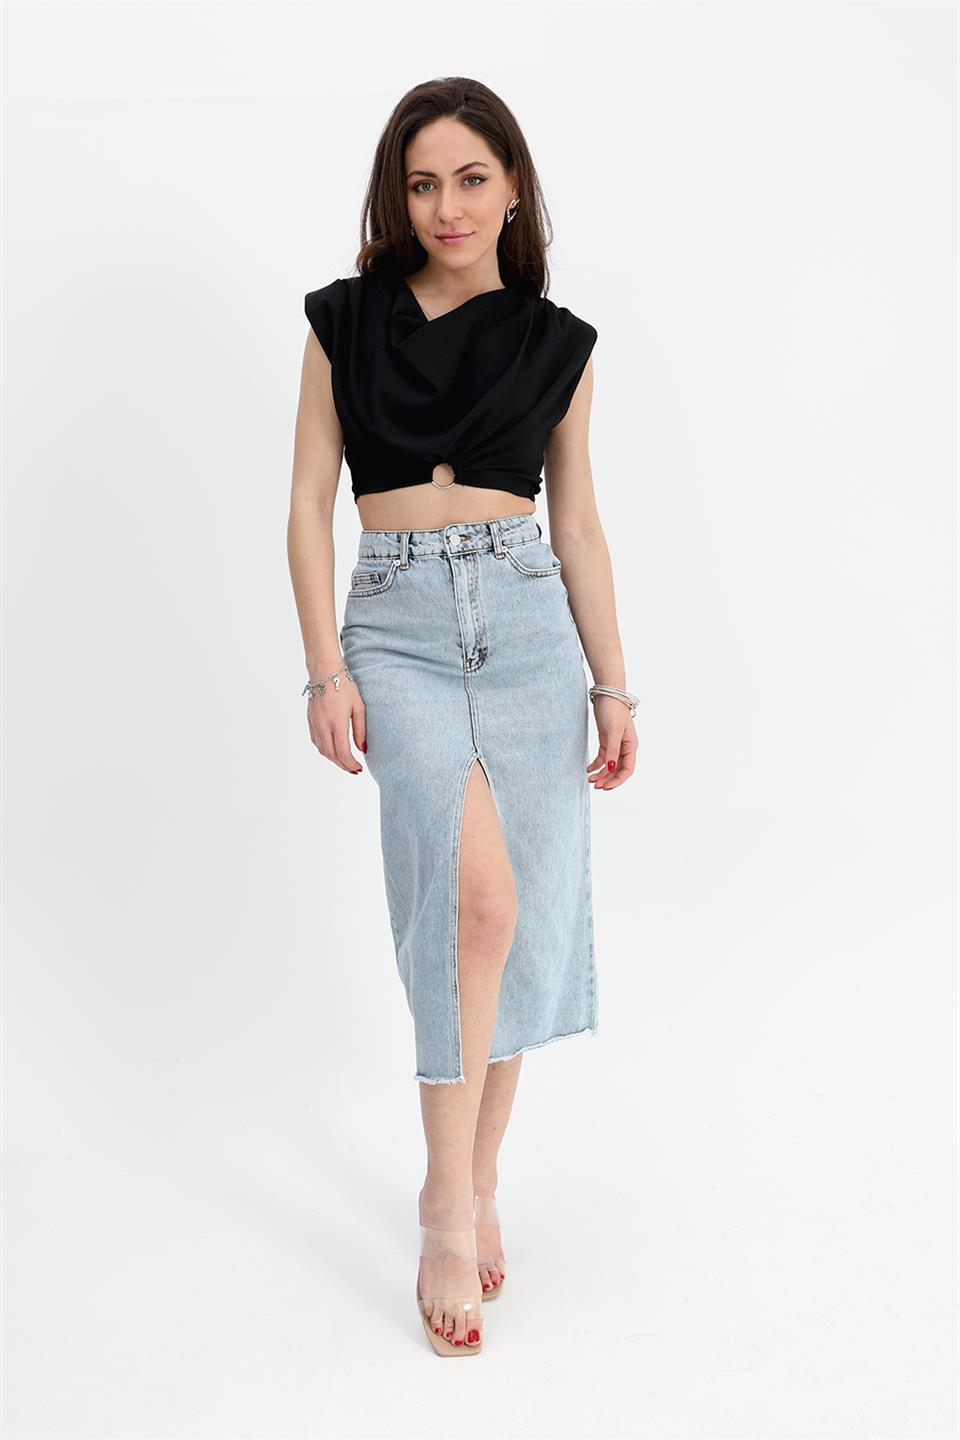 Women's Denim Skirt Front Slit Skirt Tasseled - Blue - STREETMODE™